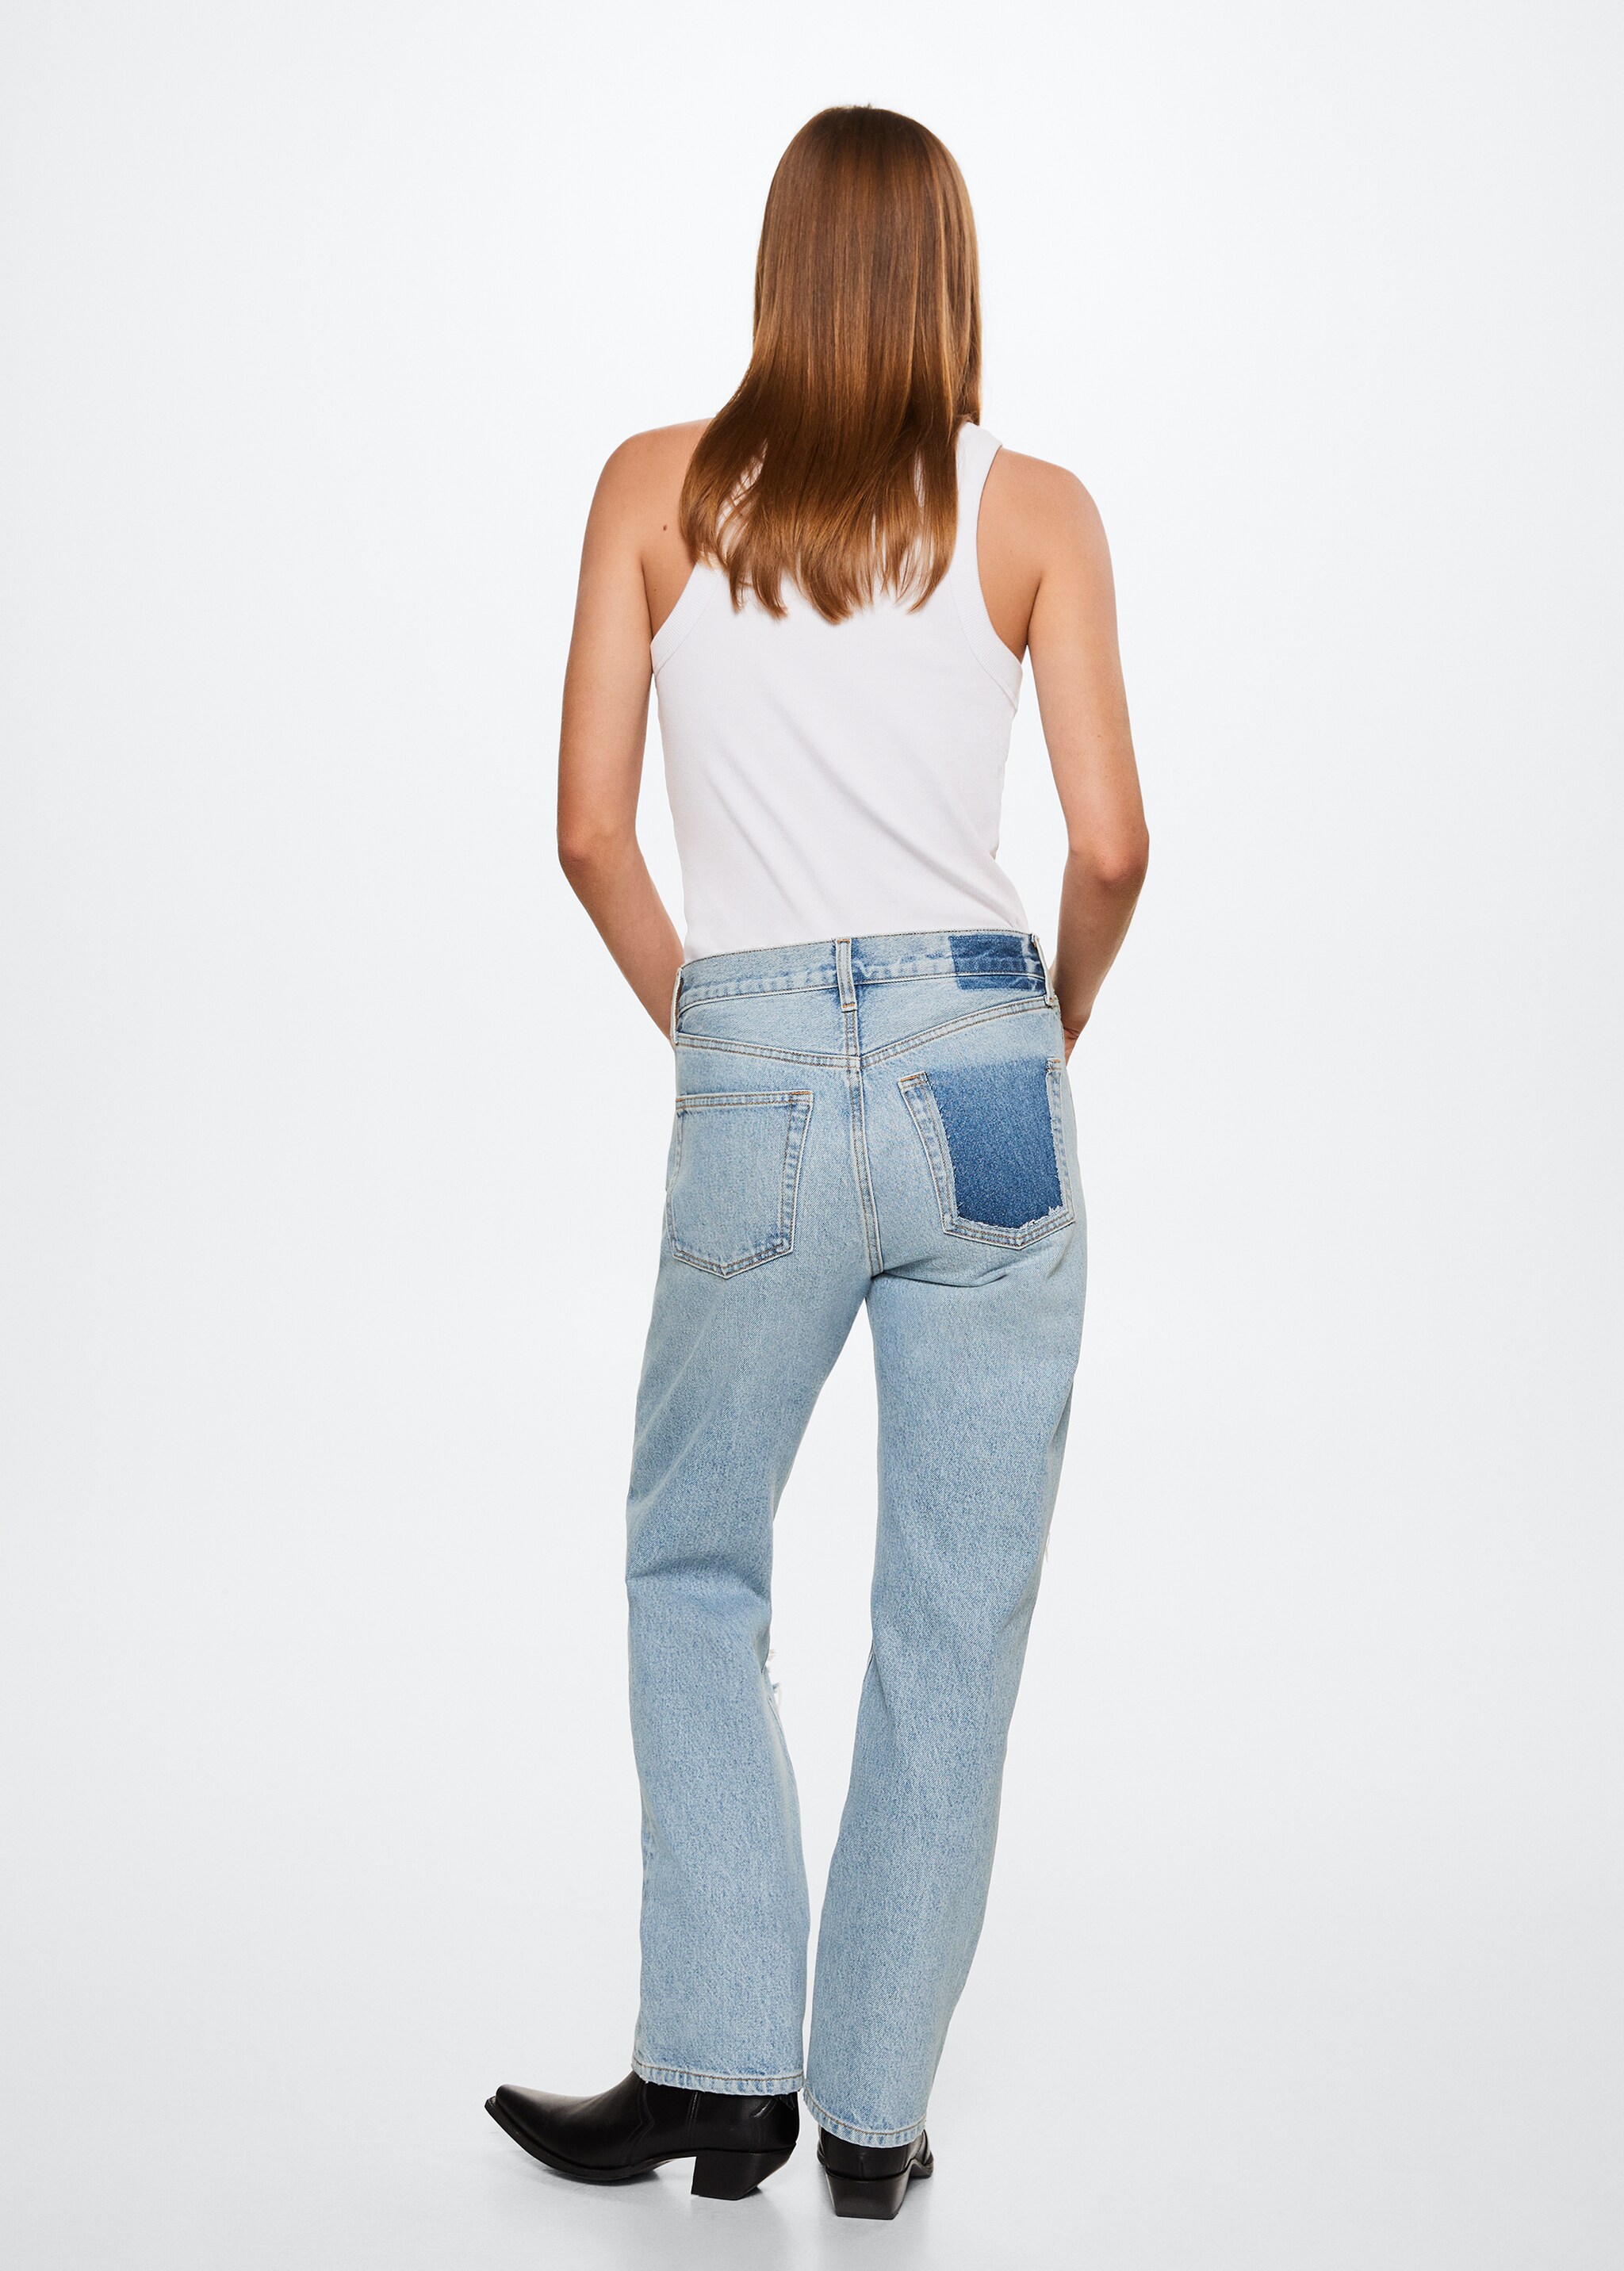 Gerade Jeans mit niedriger Bundhöhe - Rückseite des Artikels